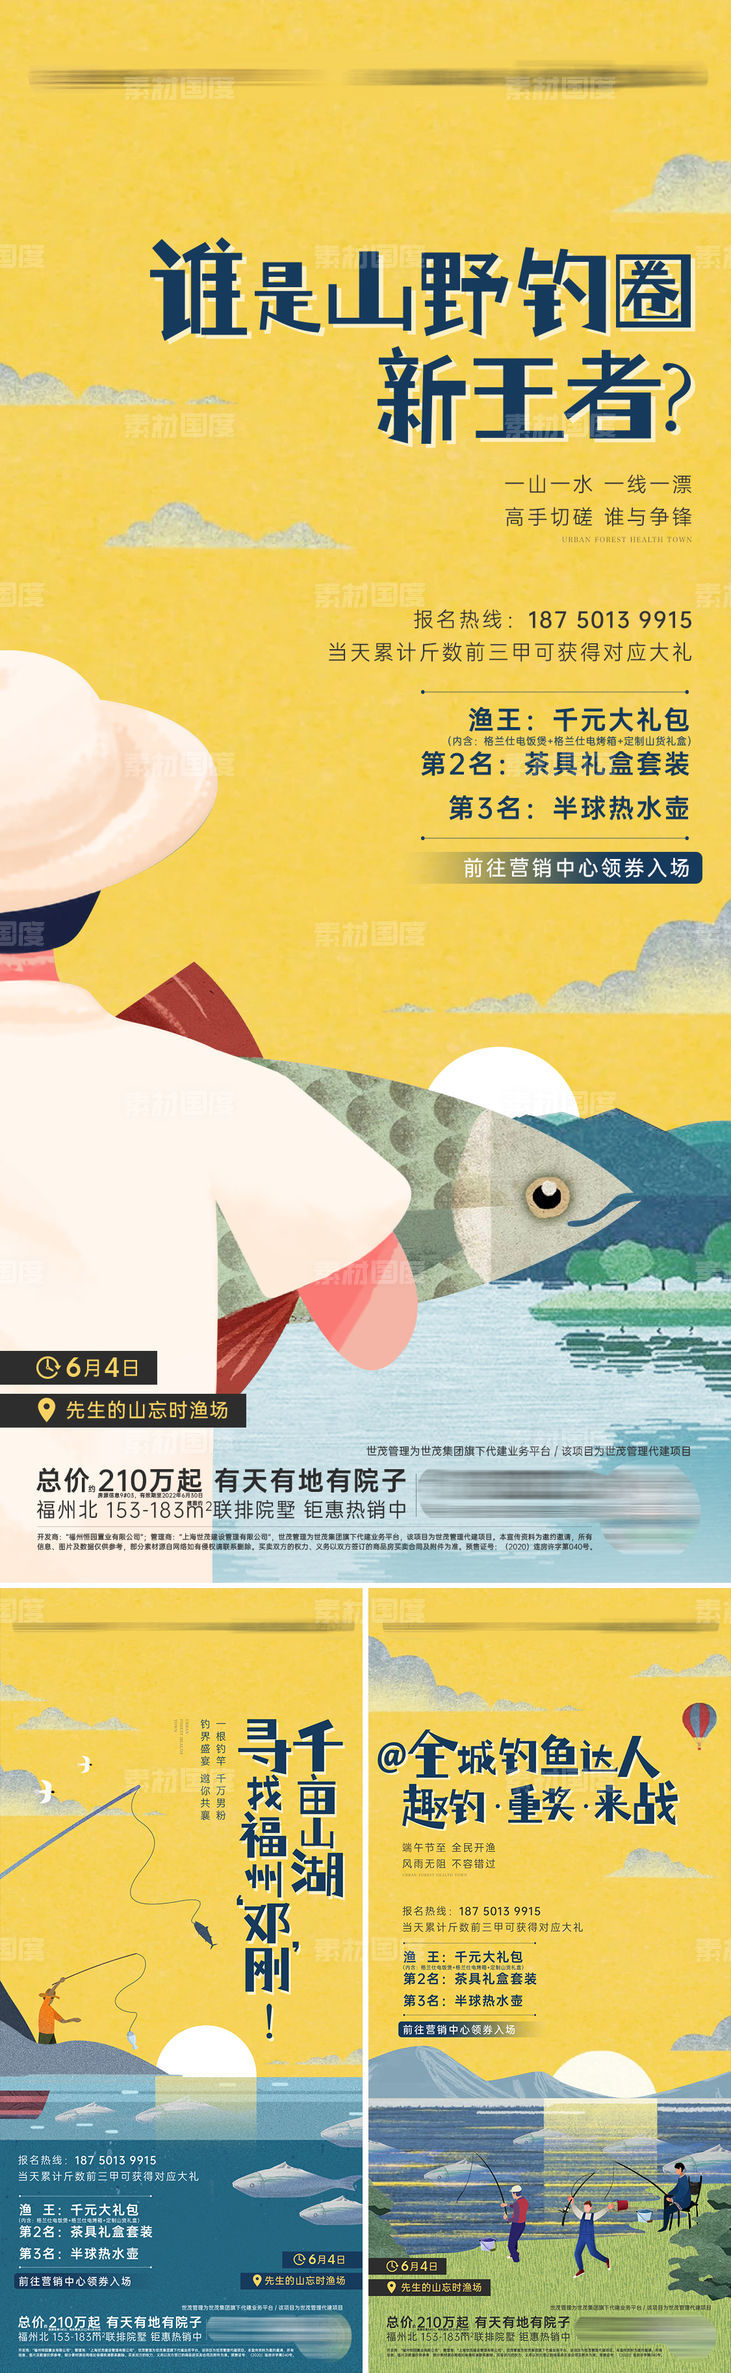 地产钓鱼活动插画系列海报